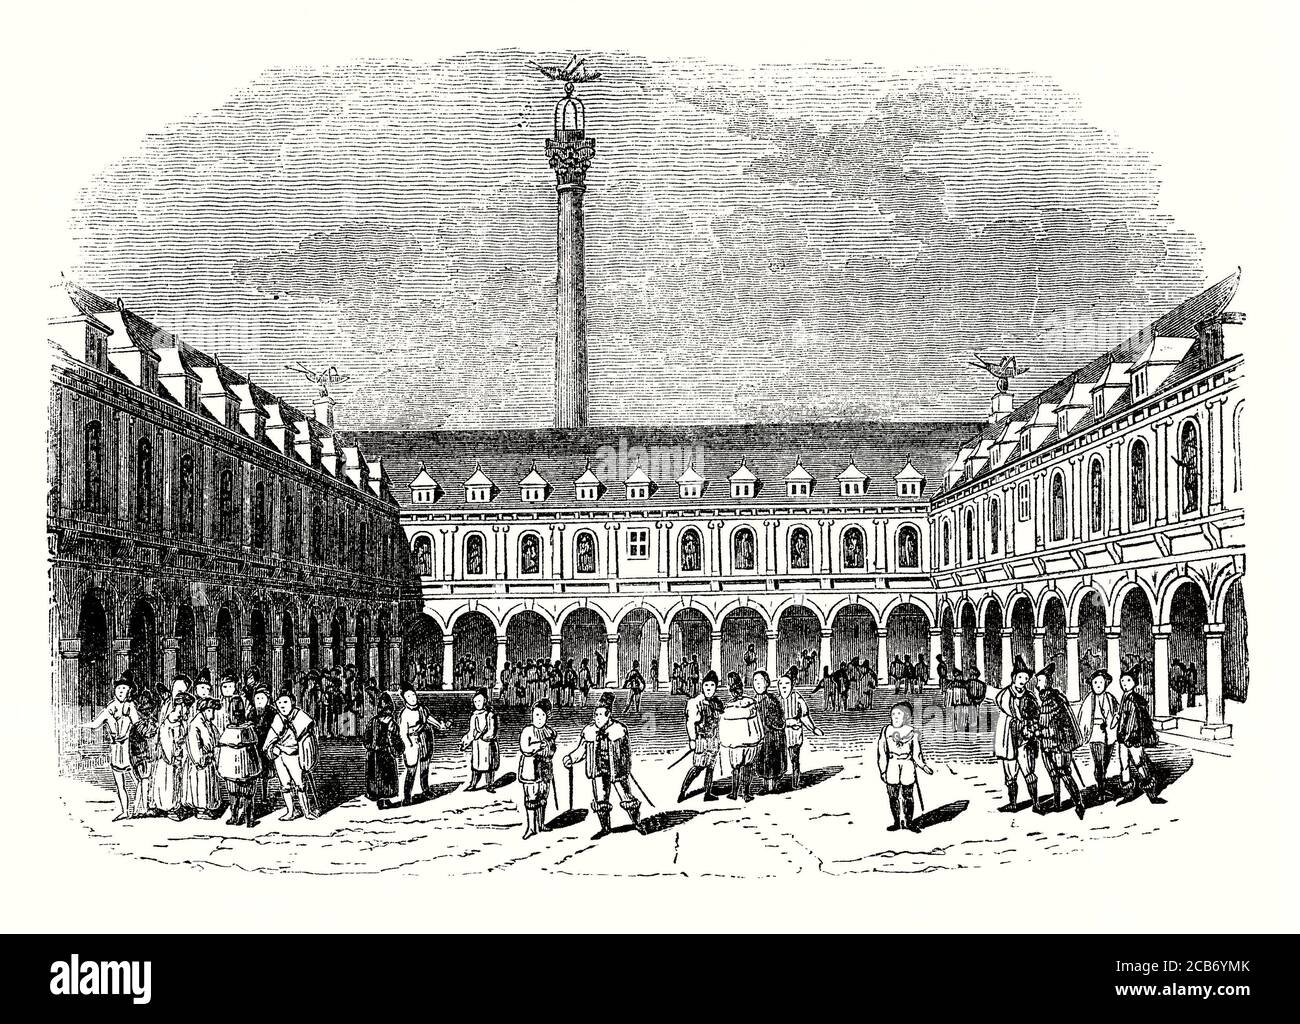 Ein alter Stich der Royal Exchange in London in der City of London, England, UK c. 1600. Es wurde im 16. Jahrhundert vom Kaufmann Sir Thomas Gresham auf Anregung seines Faktors Richard Clough gegründet, als Handelszentrum der Stadt zu fungieren. Es liegt an der Ecke von Cornhill und Threadneedle Street. Es war Großbritanniens erstes kommerzielles Fachgebäude und wurde 1571 von Königin Elizabeth I. offiziell eröffnet, die dem Gebäude seinen königlichen Status verlieh. Nur der Warenaustausch war bis zum 17. Jahrhundert erlaubt. Die ursprüngliche Börse wurde 1666 durch den großen Brand von London zerstört. Stockfoto